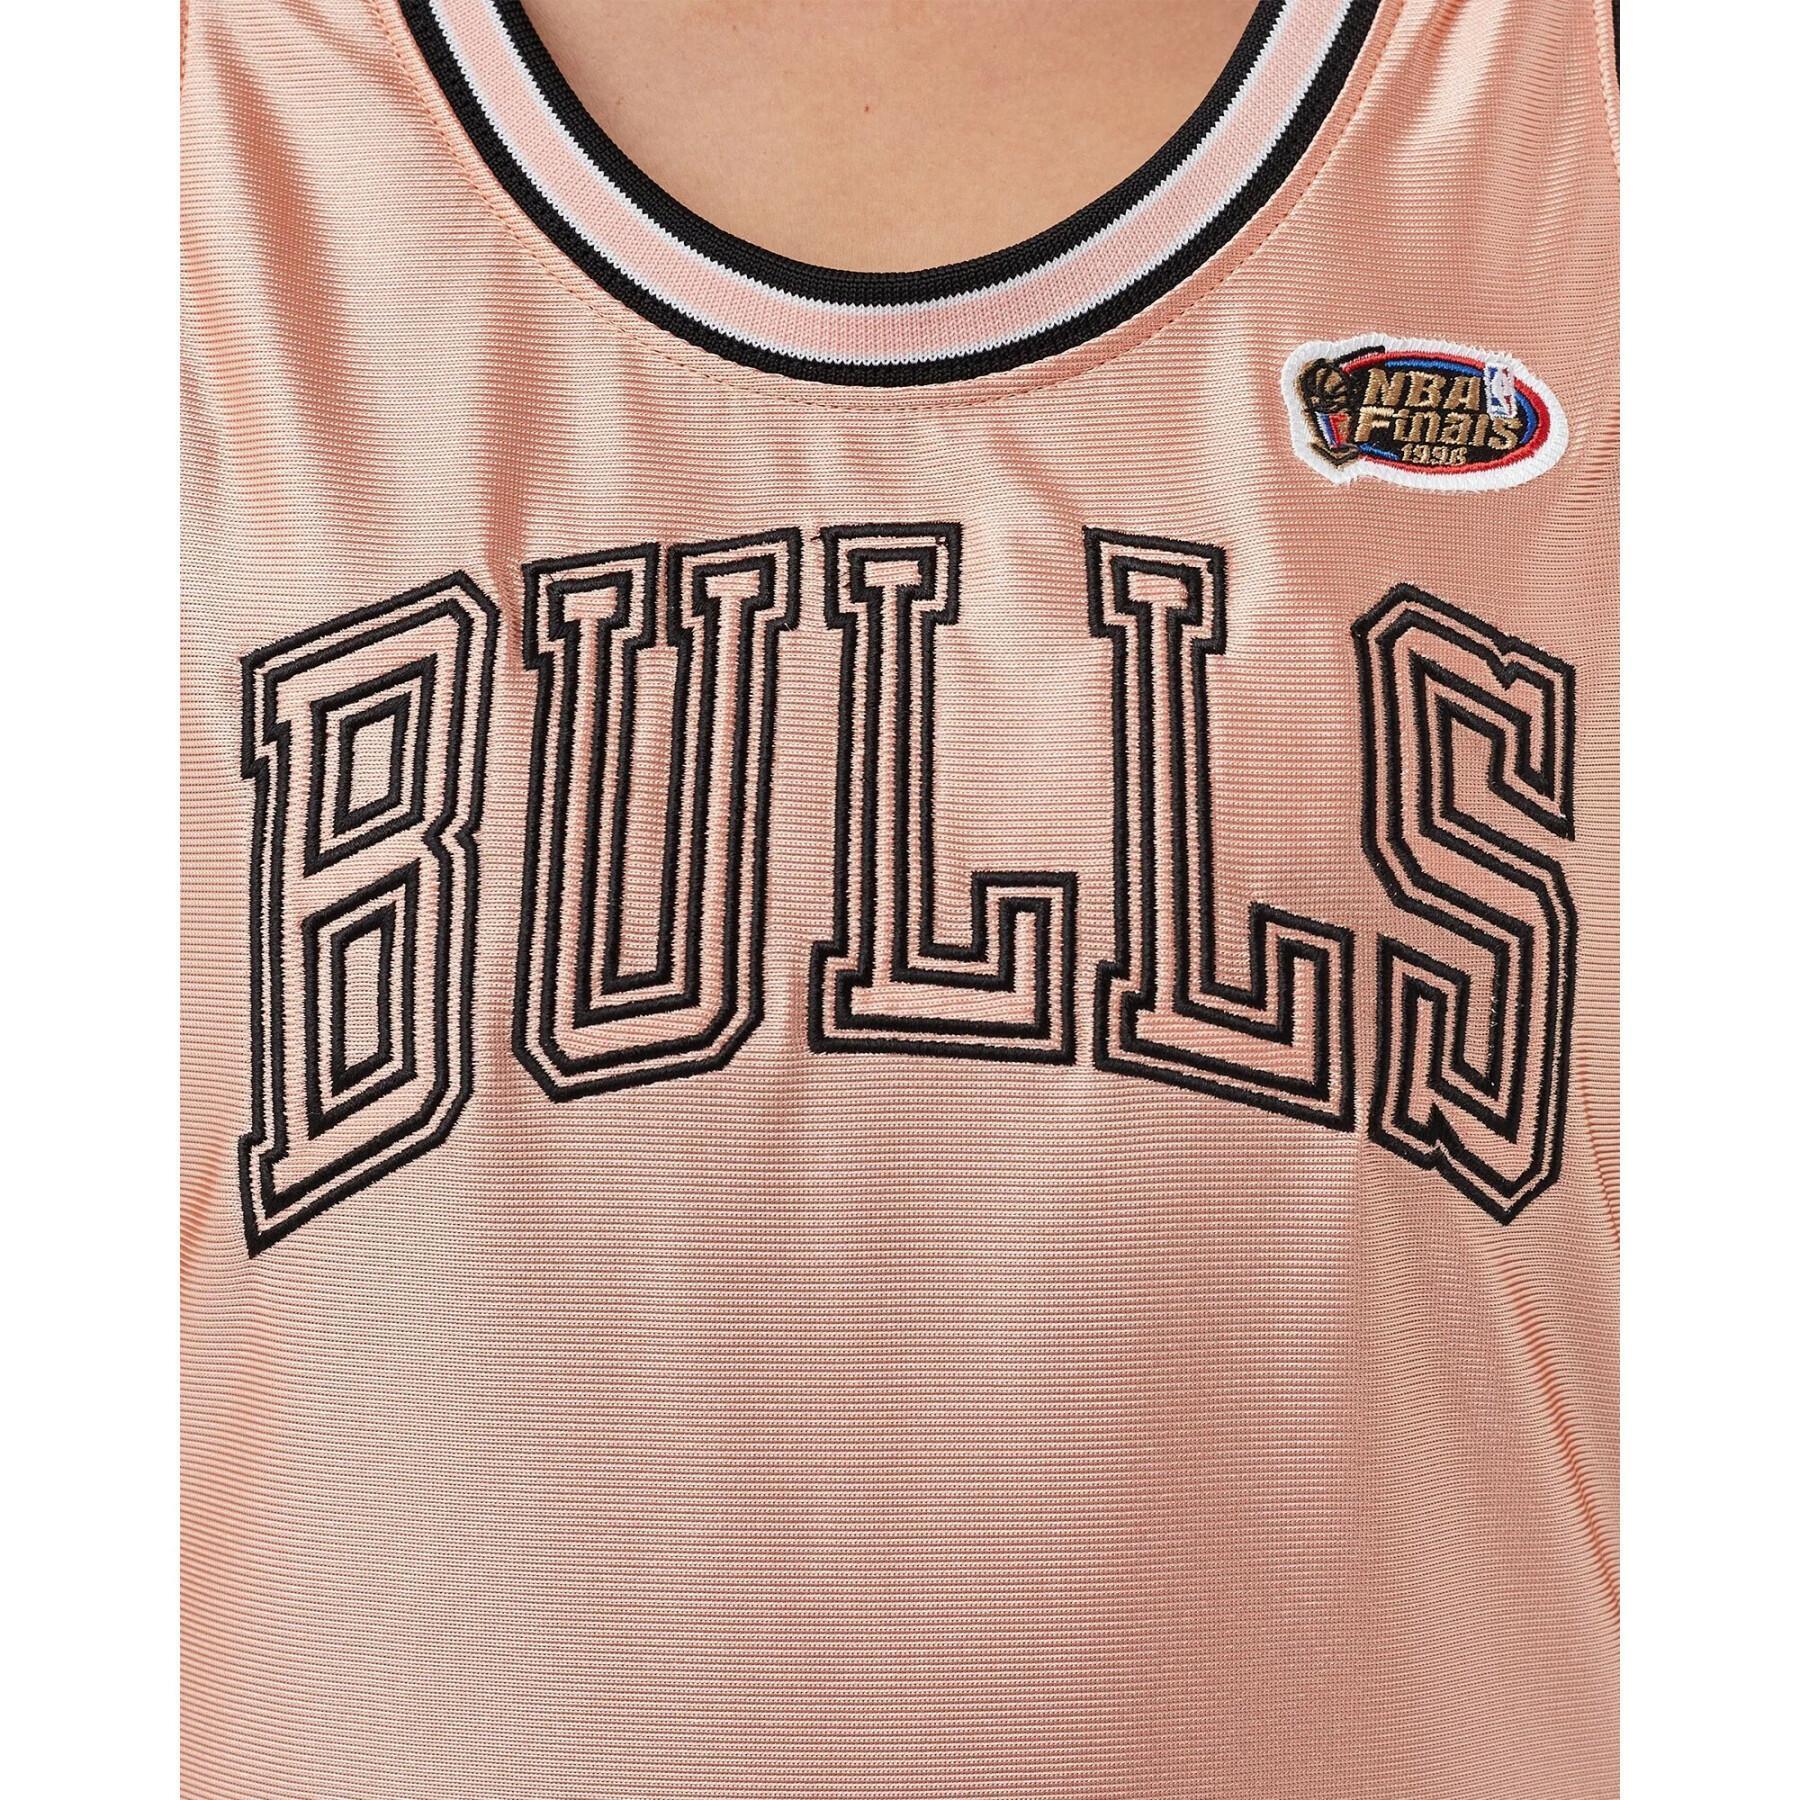 Damska koszulka Chicago Bulls dazzle